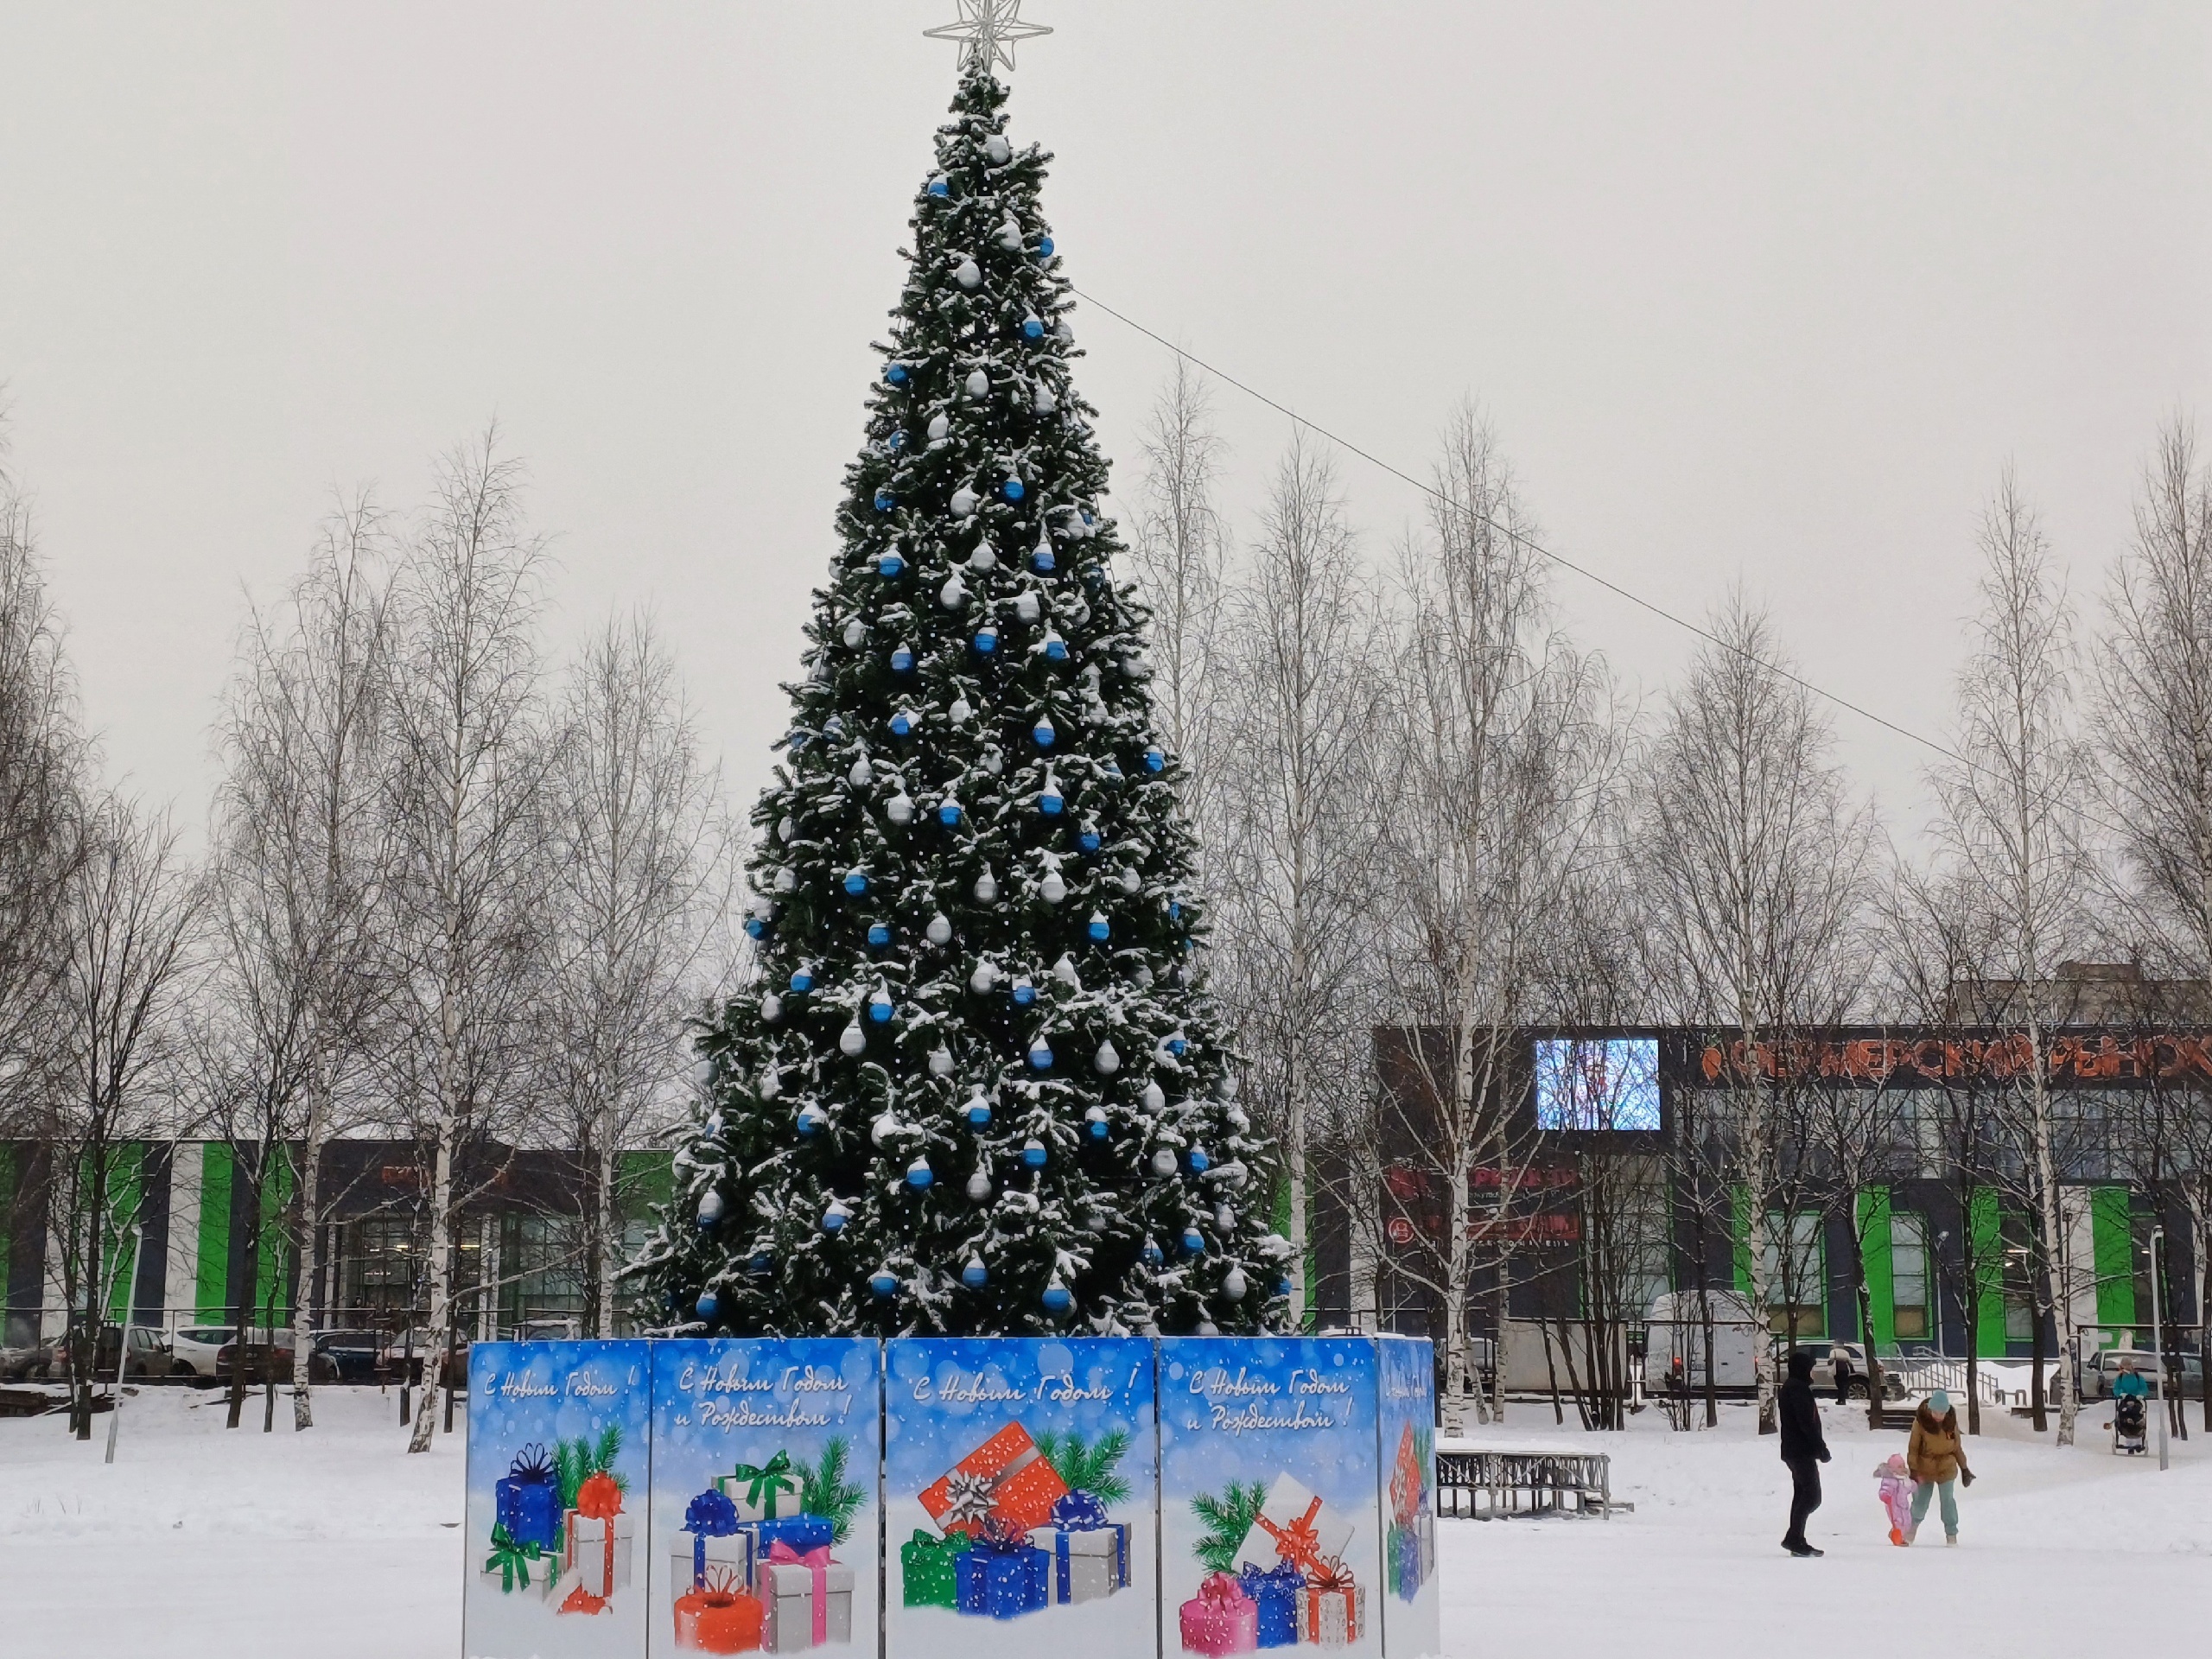 Облачно и минус 21: какой будет погода в Кирове в ближайшие три дня с 5 по 7 января